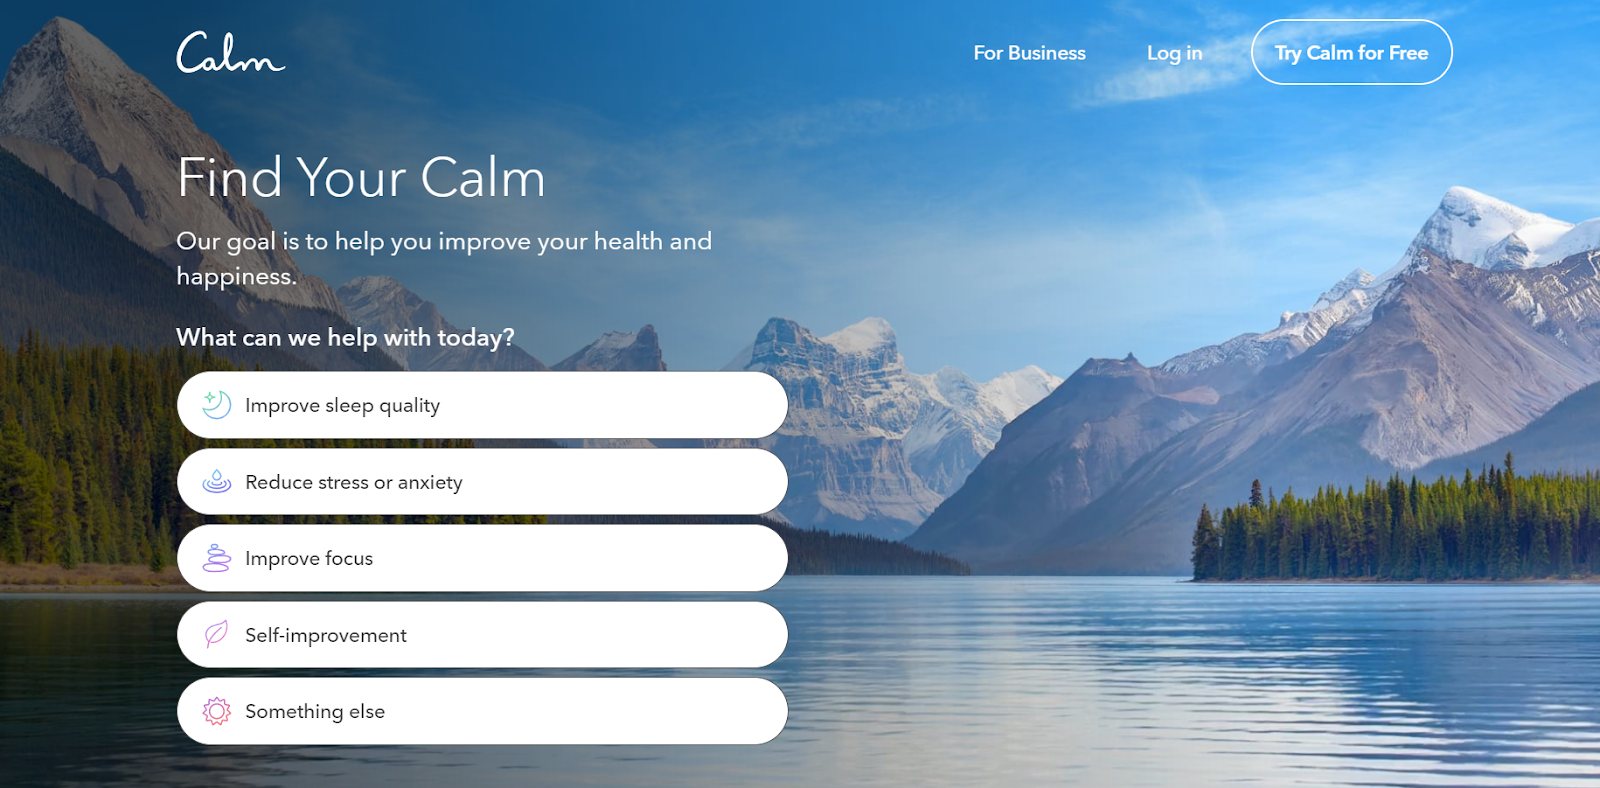 Ứng dụng Calm cho phép truy cập free với những tính năng đơn giản